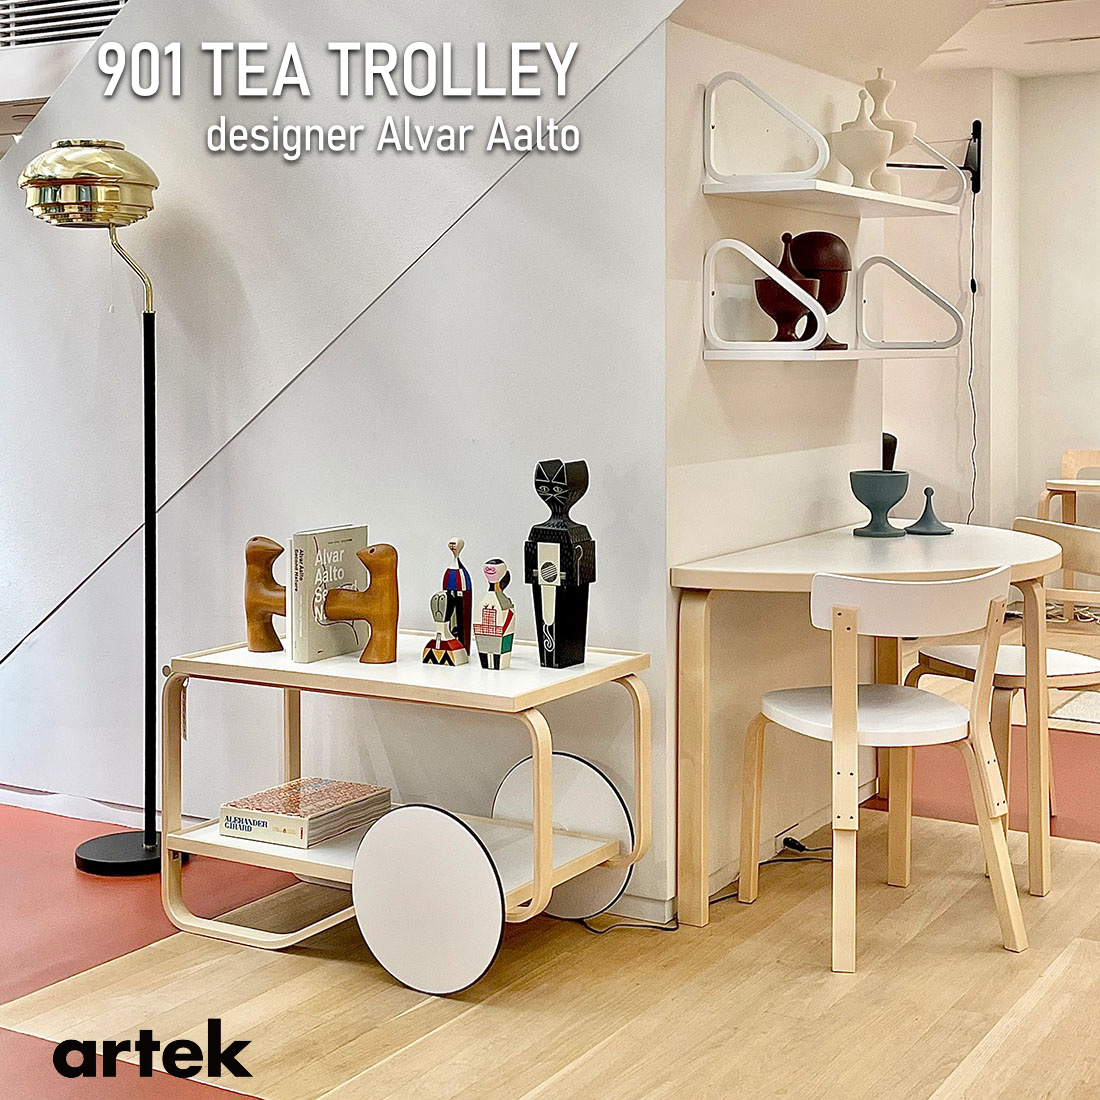 【おトク】 artek アルテック ティートロリー tea trolley 901 teatrolley ブラック ホワイト テーブル 車輪 車輪付き 北欧 インテリア